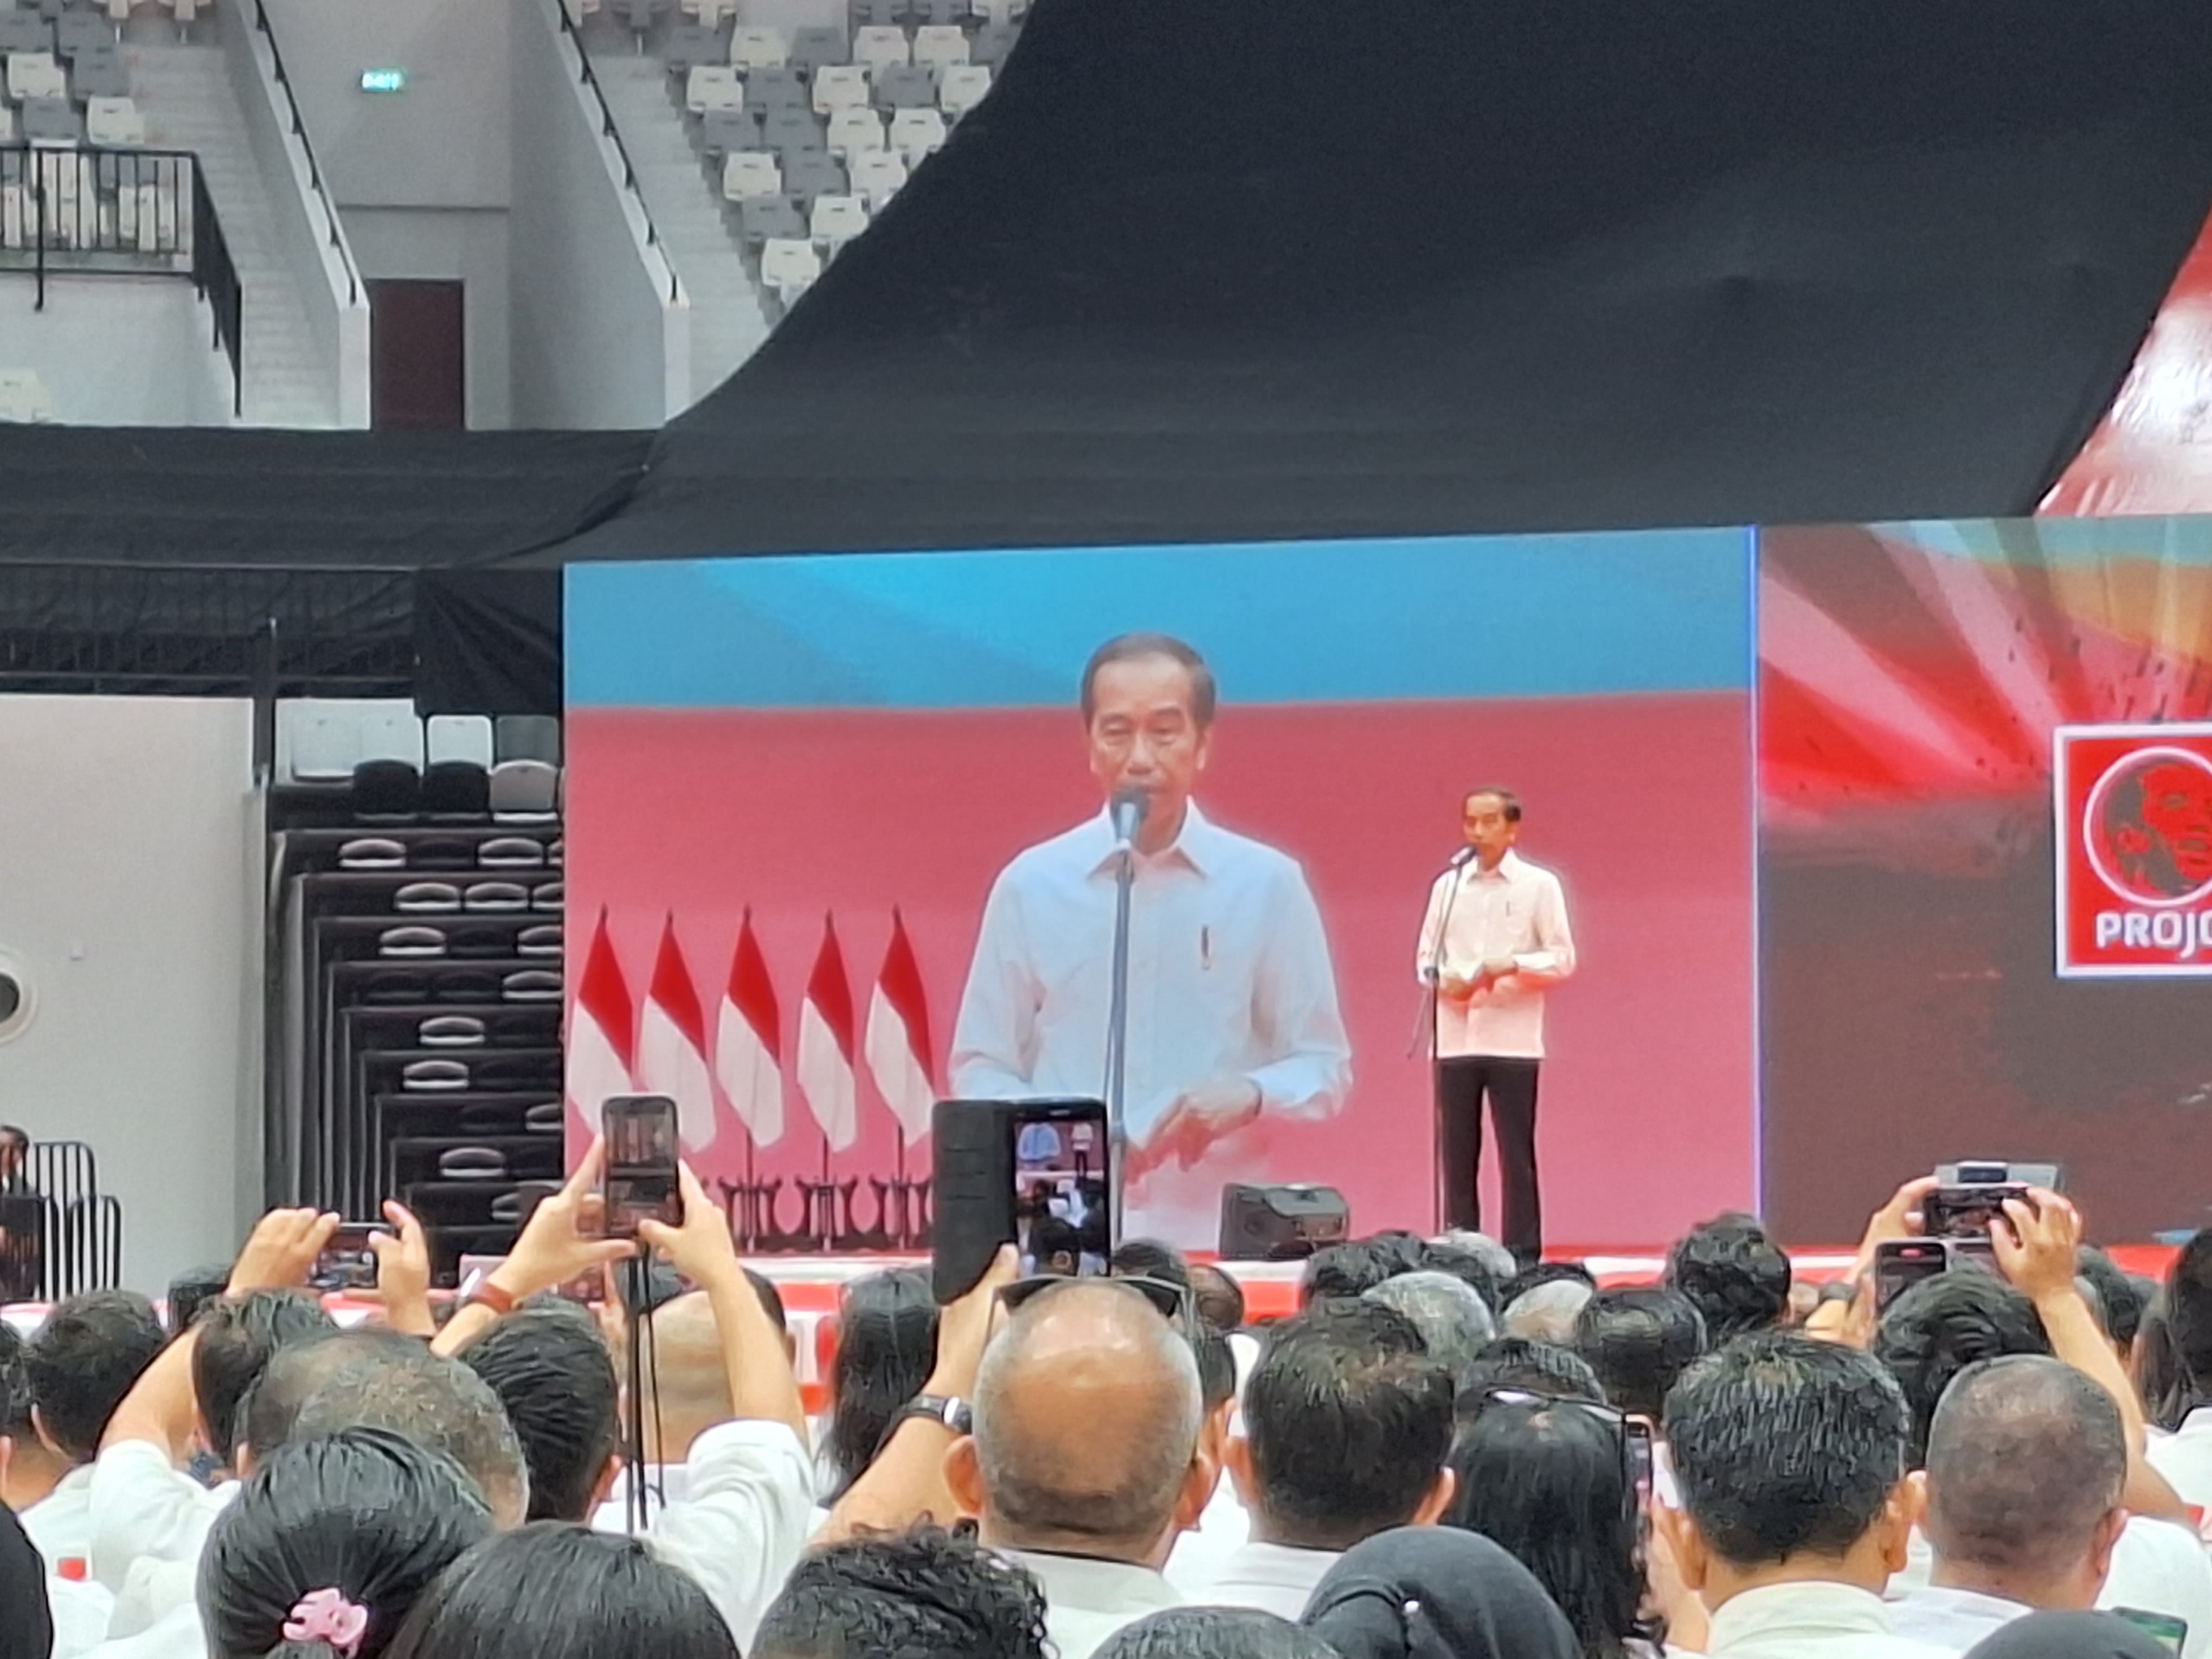 Pesan Jokowi ke Projo : Situasi Jelang Pemilu Menghangat, Jangan Ikut Ngomporin